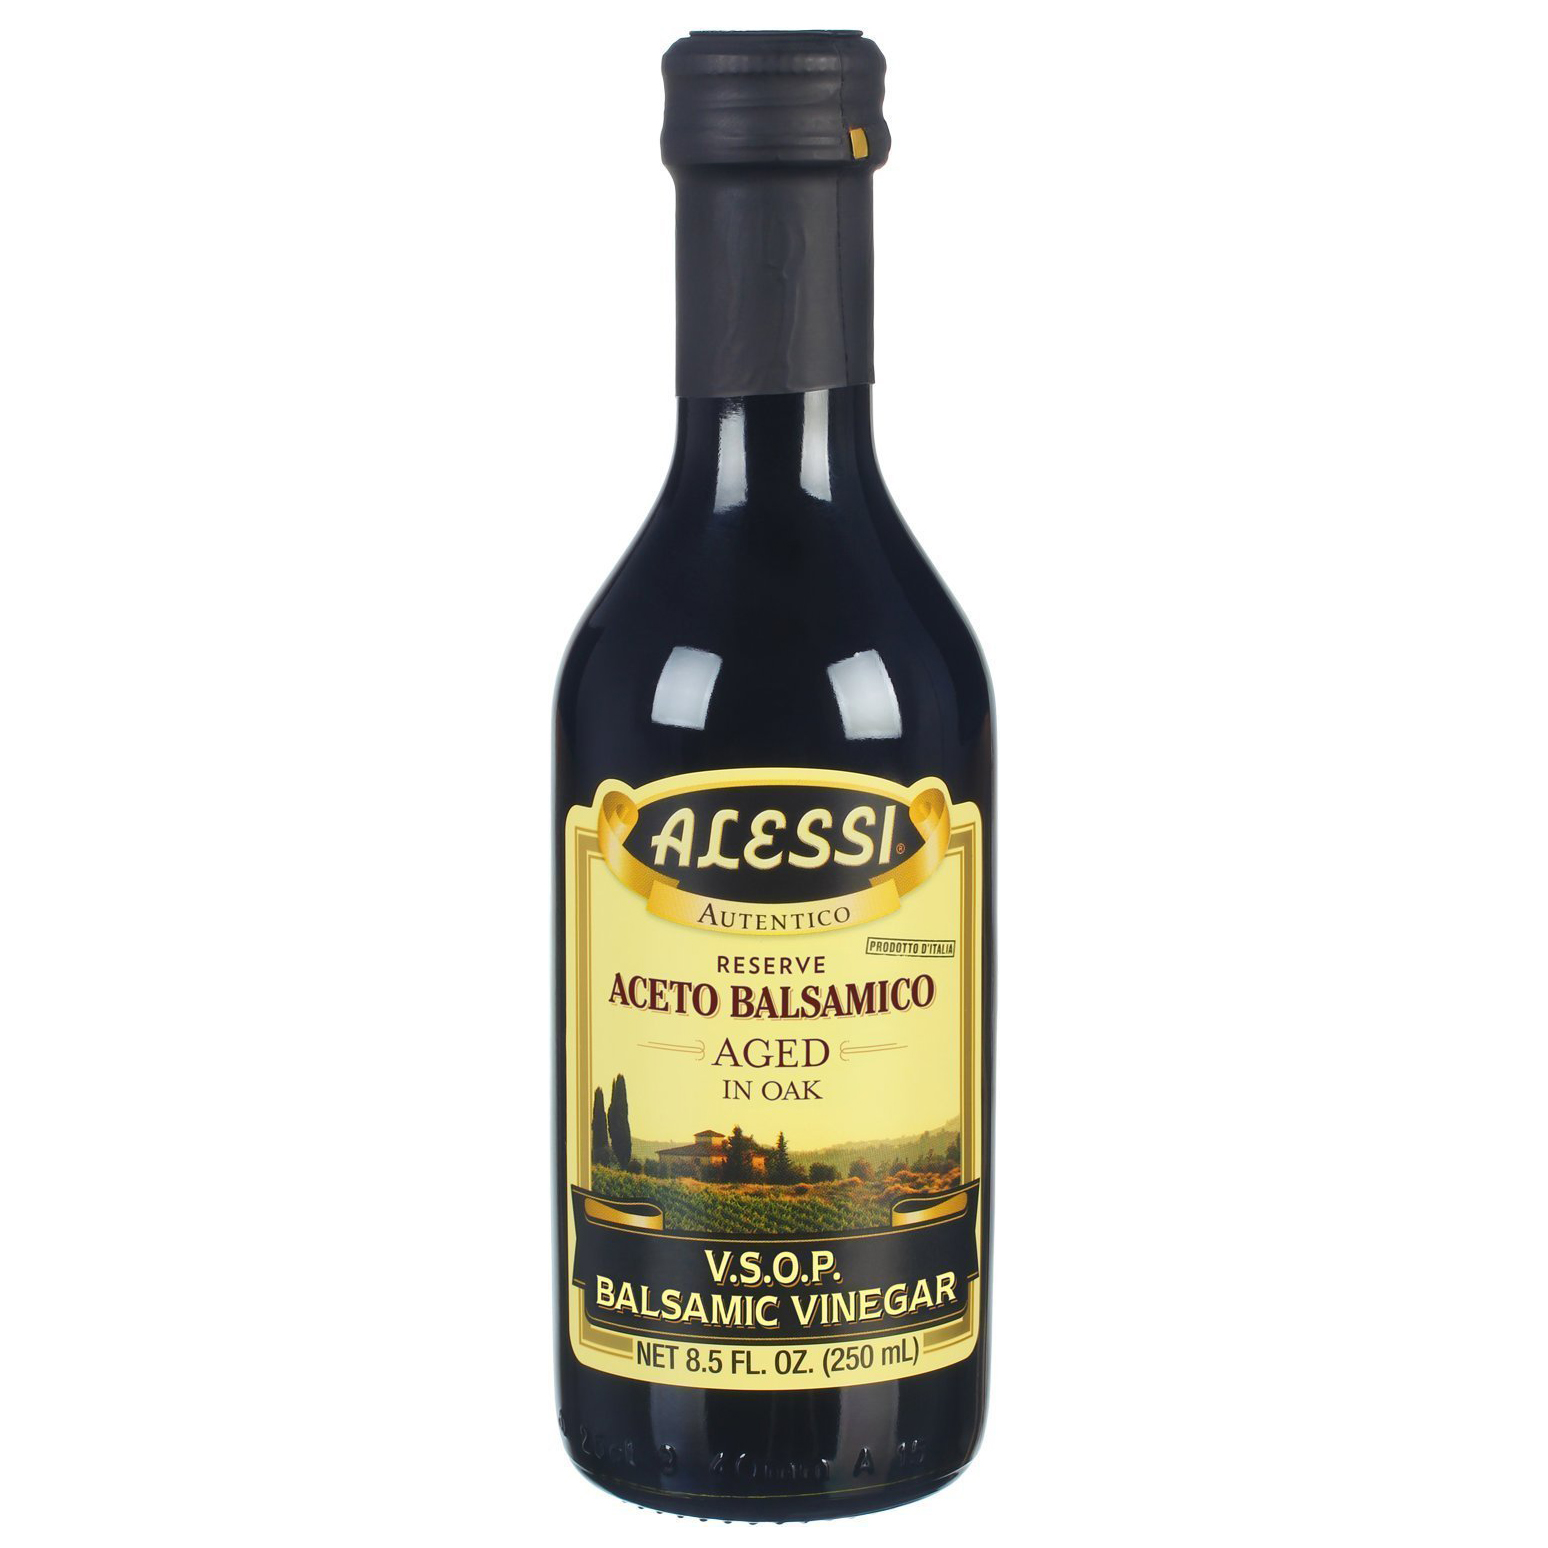 ALESSI - PREMIUM ACETO BALSASMICO AGED IN OAK - (V.S.O.P. Balsamic Vinegar) - 8.5oz